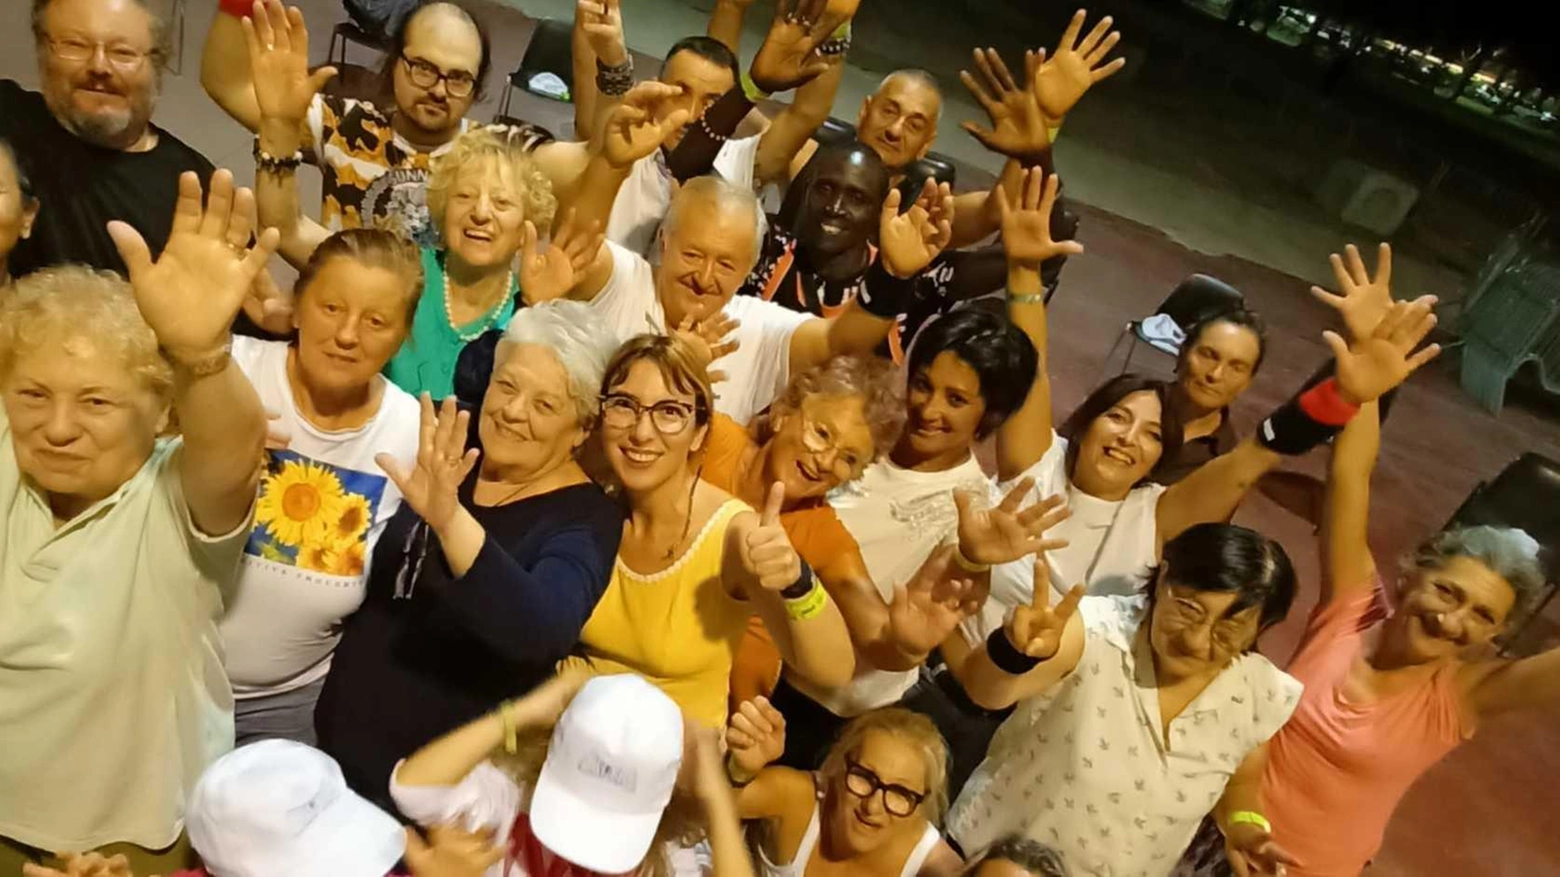 

Teatro libero, inclusivo e aperto a Civitanova: "C'è abbastanza posto per tutti"